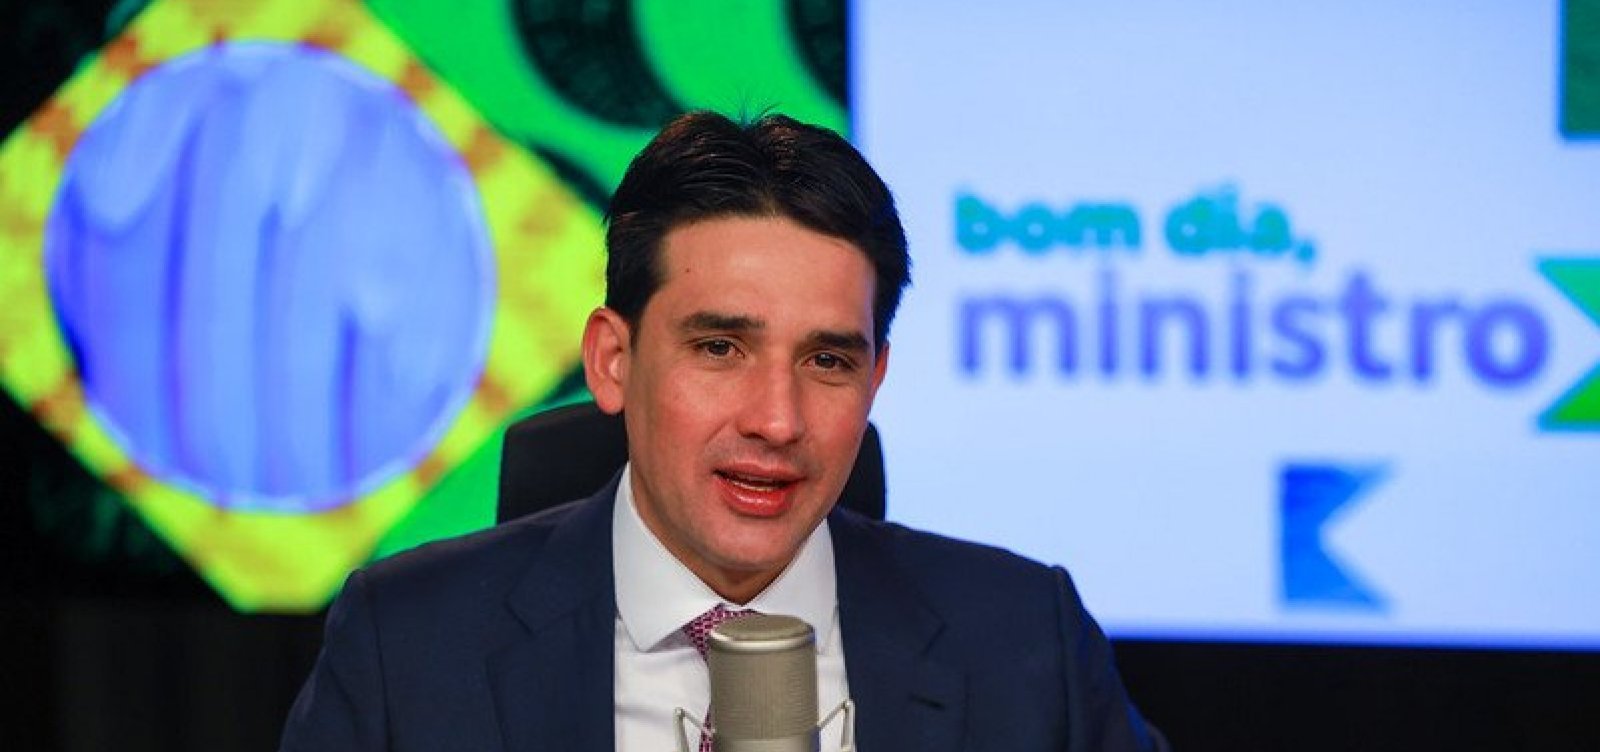 Segunda fase do Voa Brasil terá foco em estudantes, diz ministro